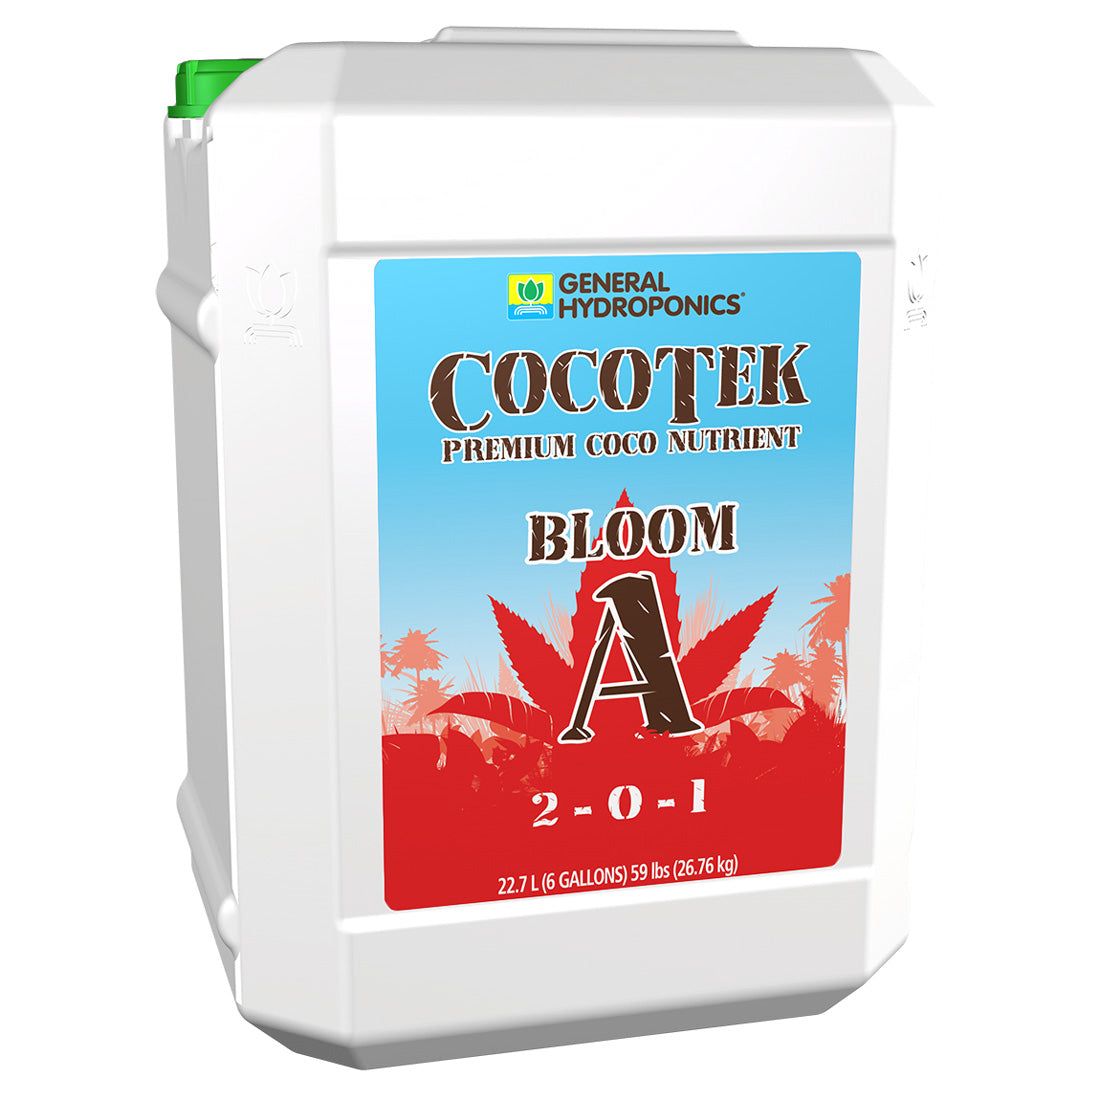 GH CocoTek Bloom A ココテックブルームA（2パートベース肥料）